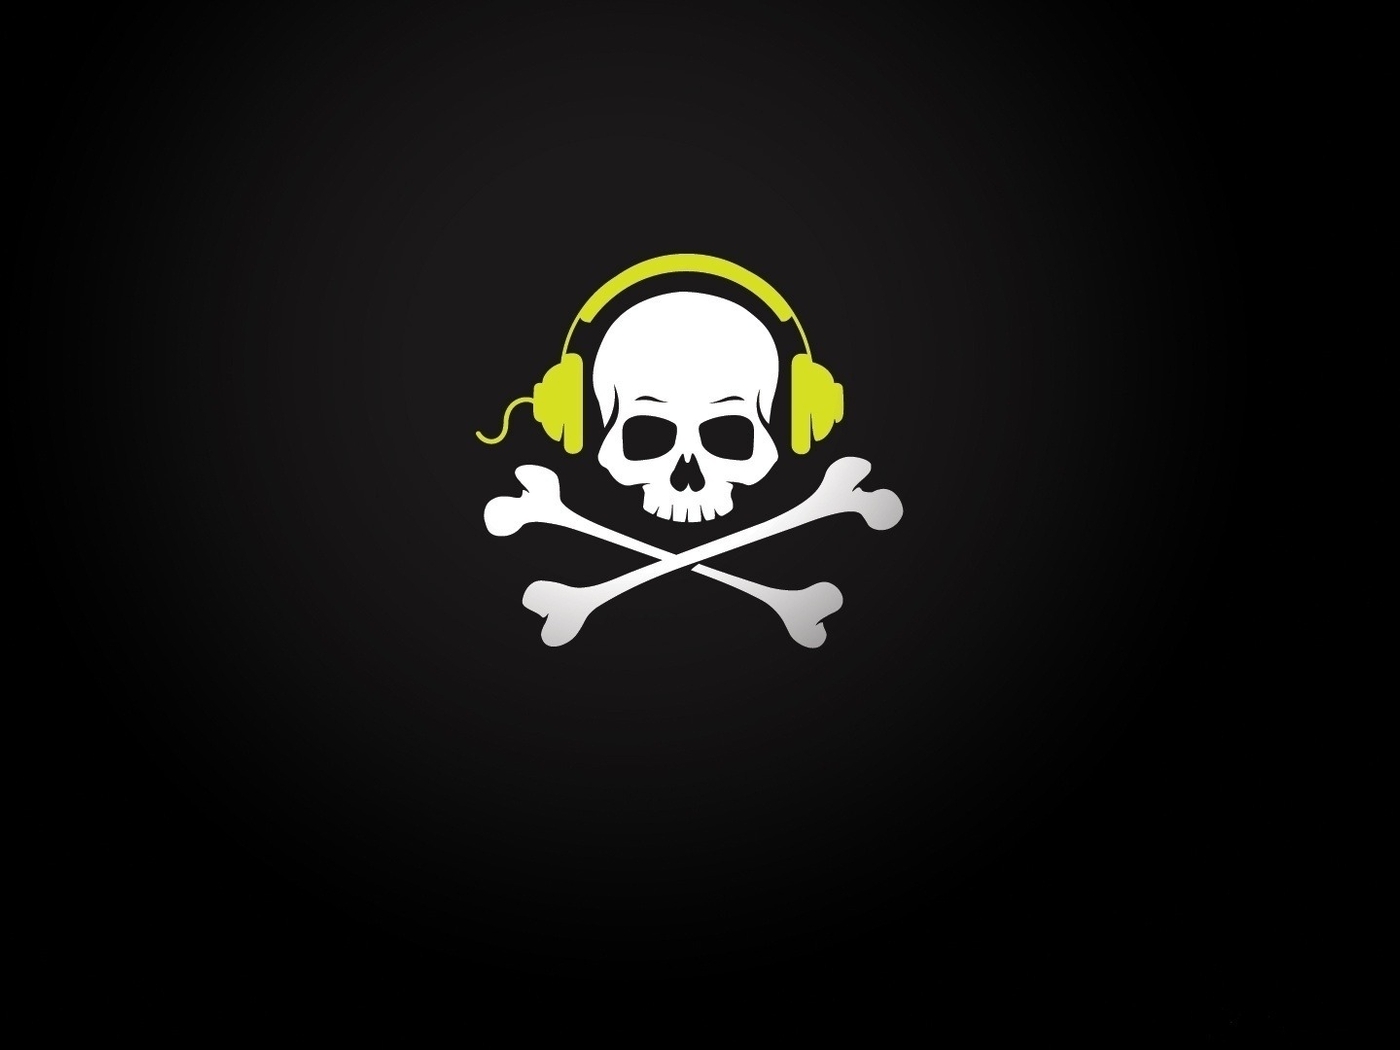 Image: Skull, bones, headphones, dark background